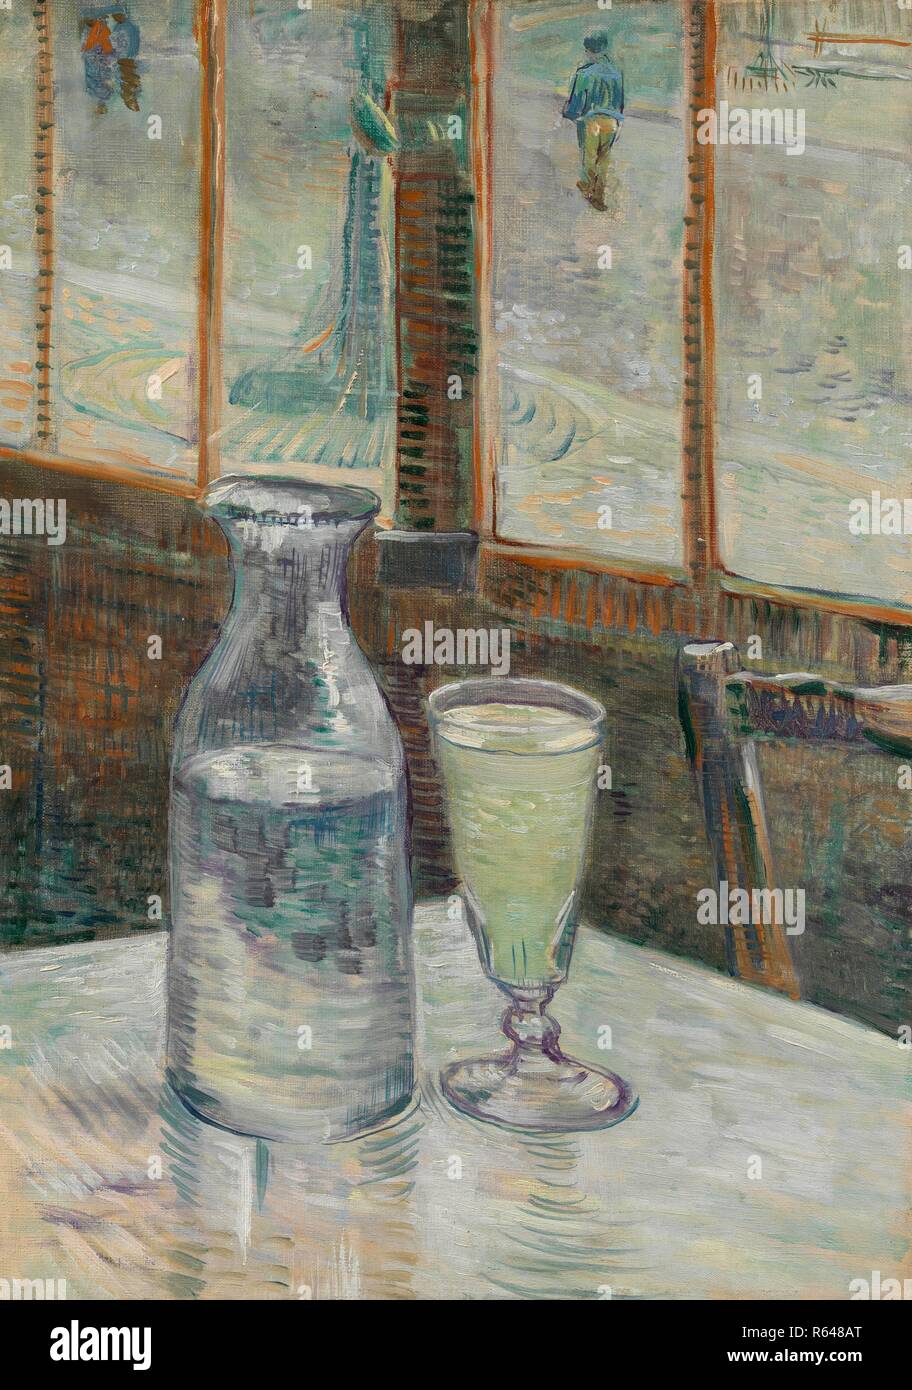 Café Table with Absinthe. Date: February-March 1887, Paris. Dimensions: 46.3 cm x 33.2 cm, 60 cm x 47 cm. Museum: Van Gogh Museum, Amsterdam. Author: VAN GOGH, VINCENT. VINCENT VAN GOGH. Stock Photo